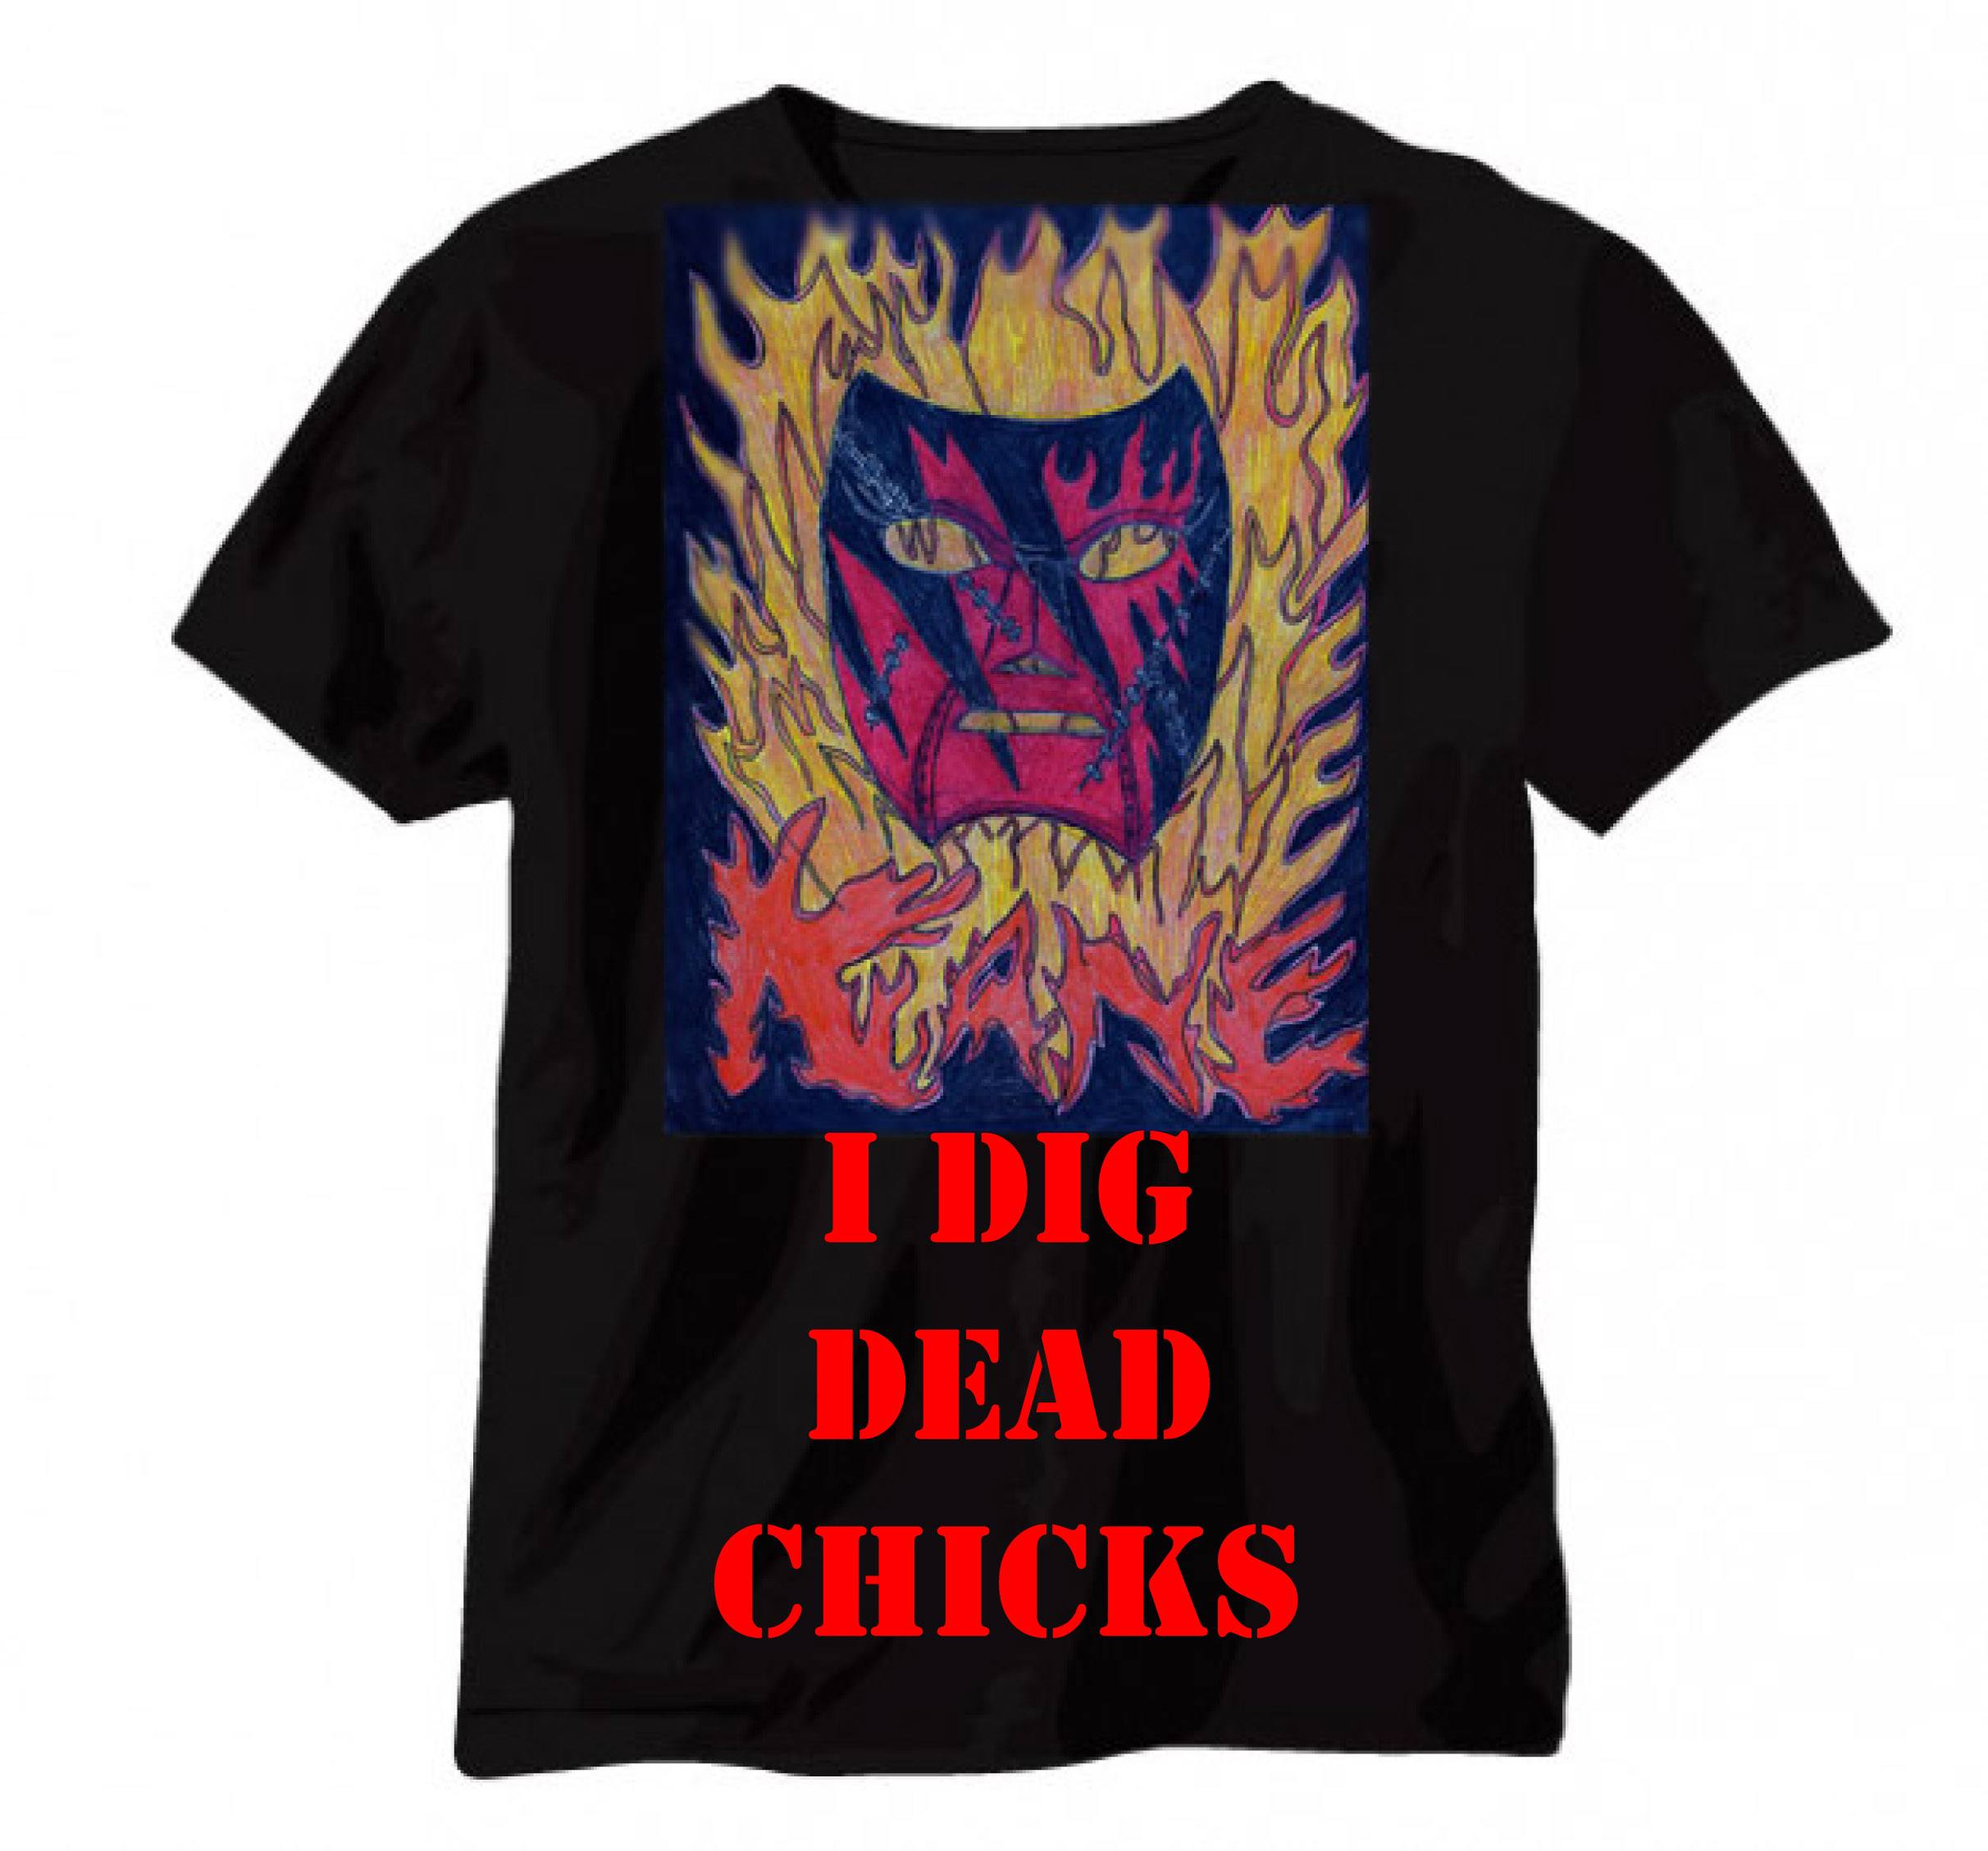 Kane designs “I Dig Dead Chicks” t-shirt